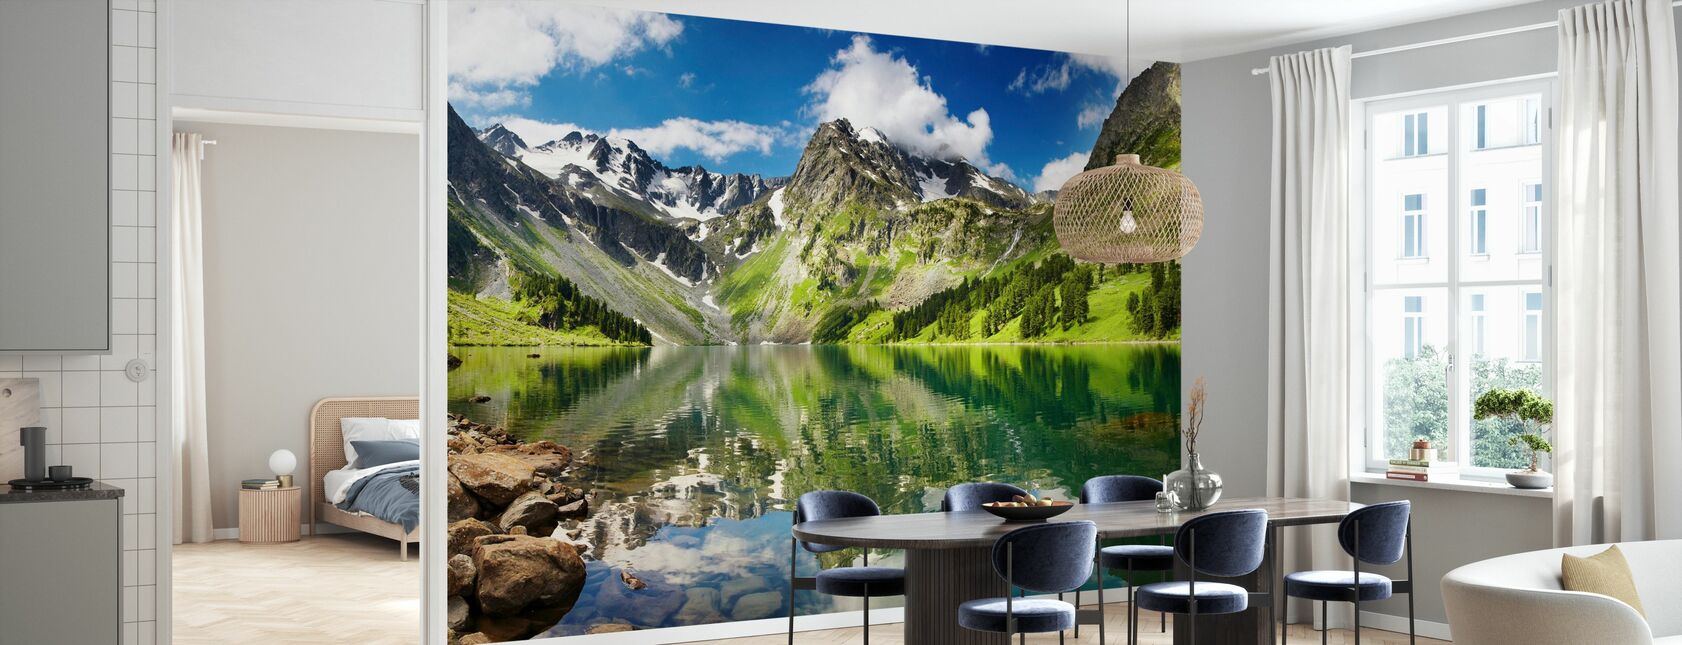 Mountain Lake - Wallpaper - Kitchen